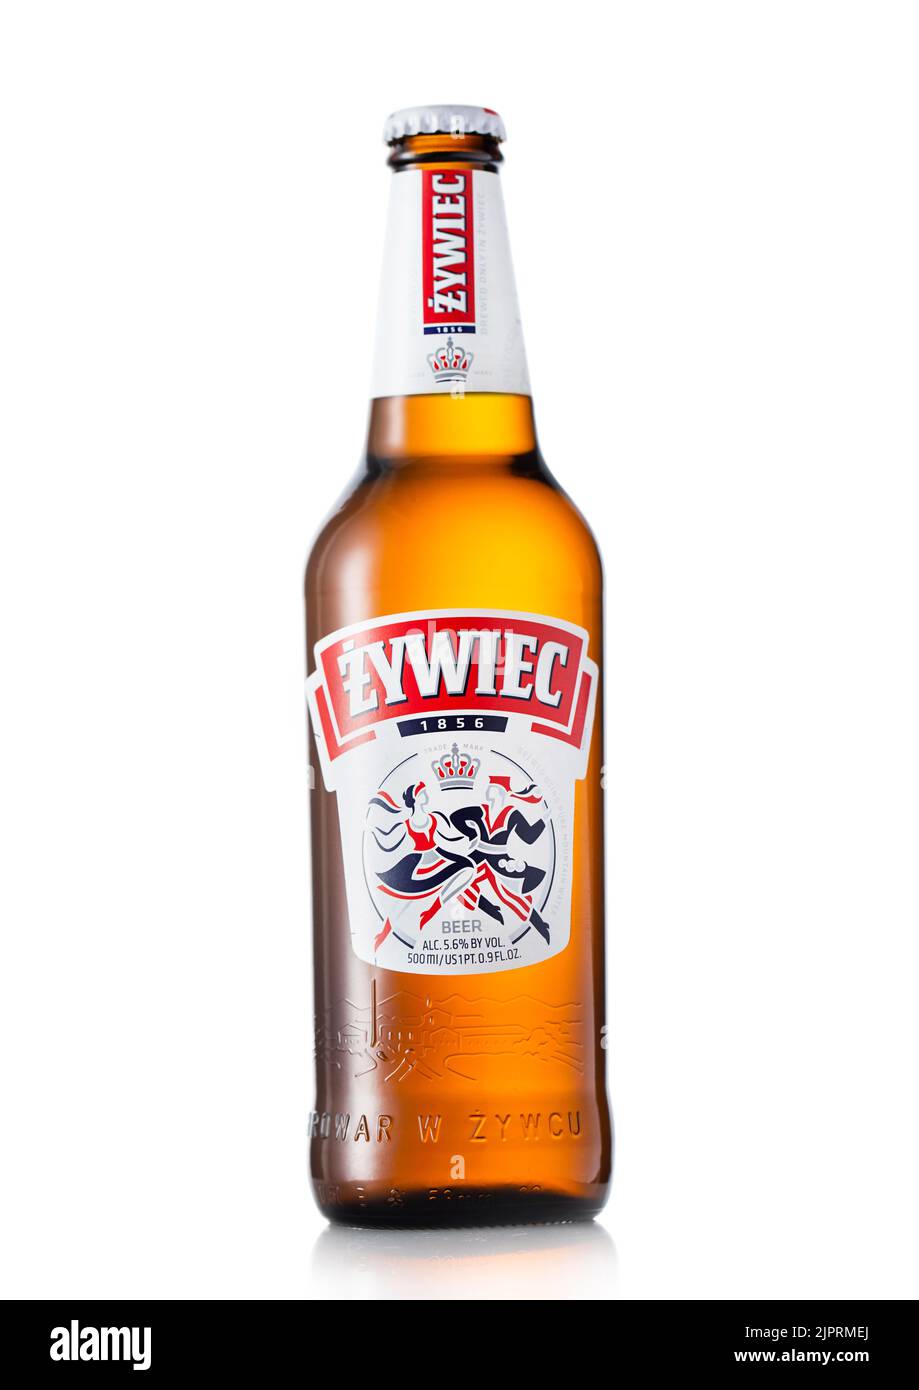 LONDON, UK - JUNE 22, 2022: Bottle of Zywiec lager beer on white. Stock Photo